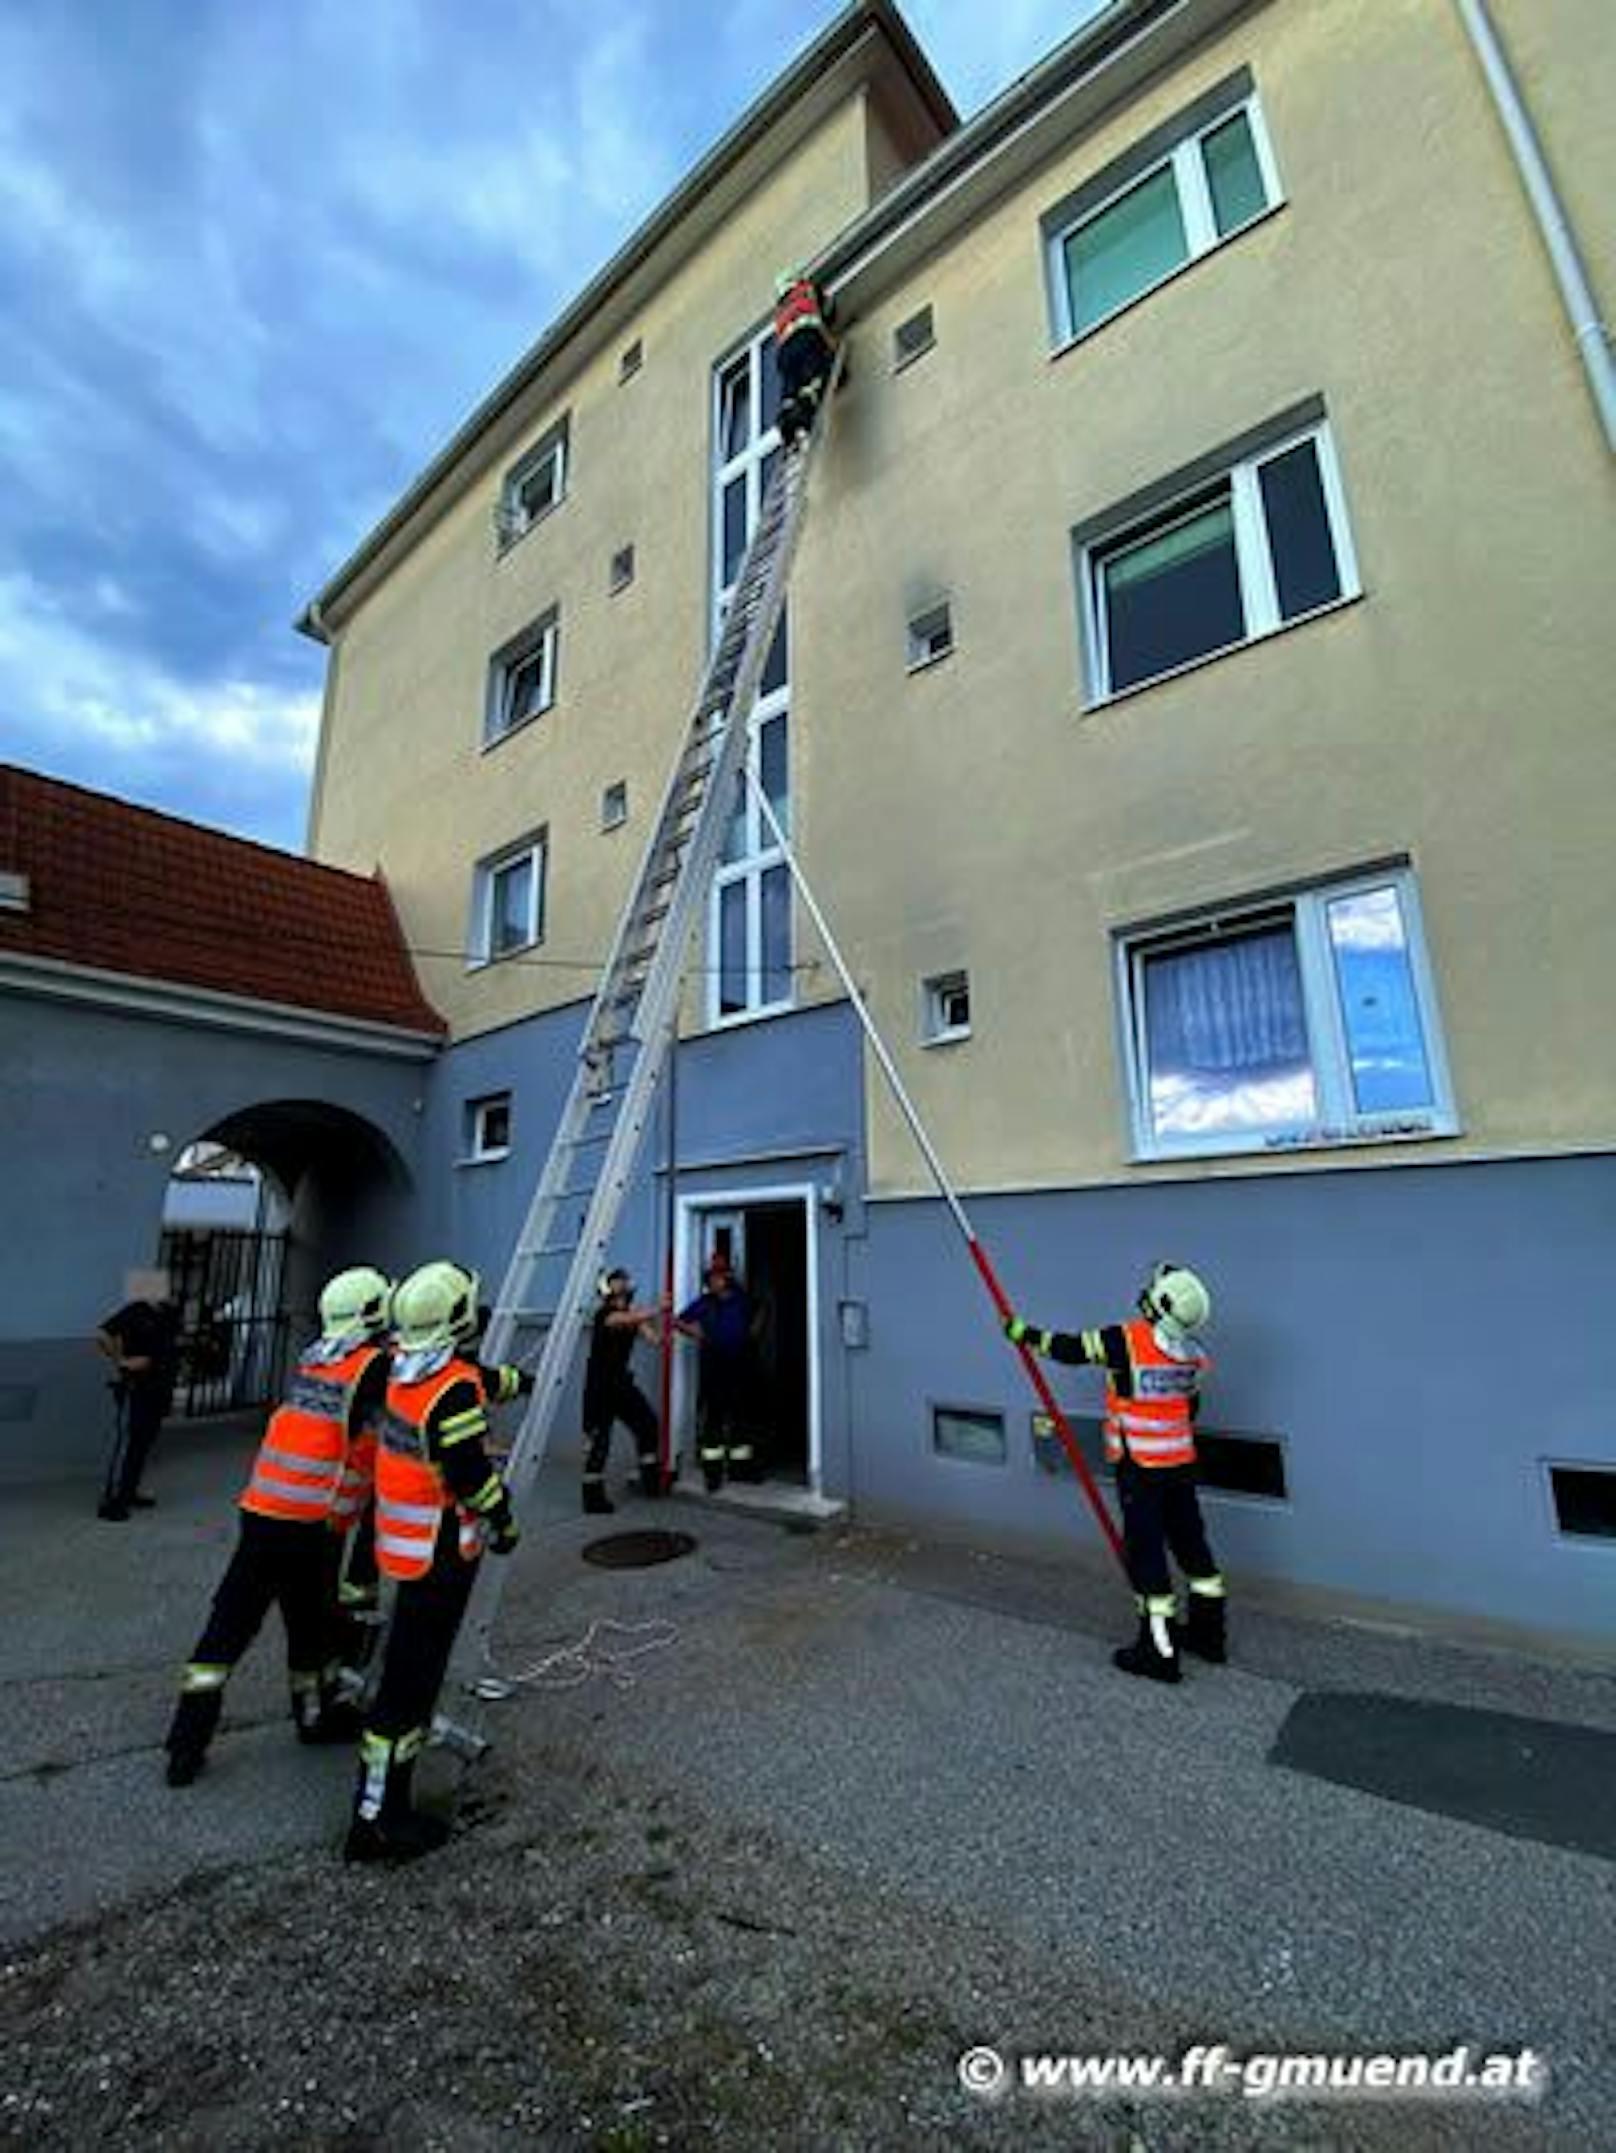 Einsatz in luftiger Höhe für die Feuerwehr Gmünd.